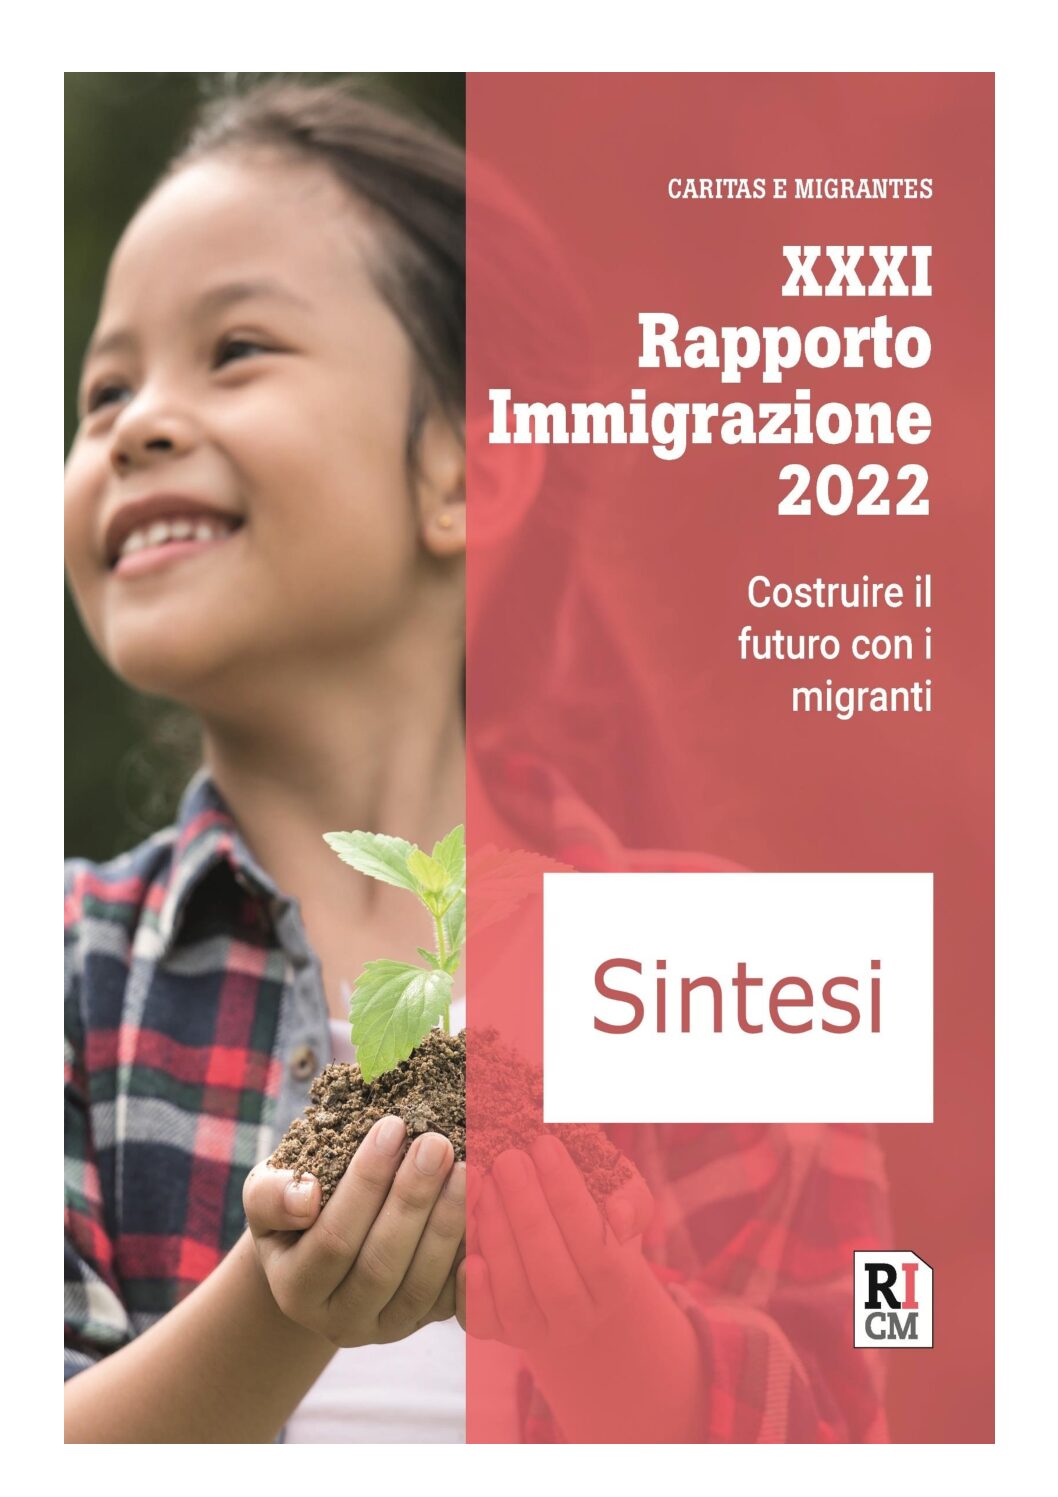 XXXI Rapporto Immigrazione 2022. Costruire il futuro con i migranti